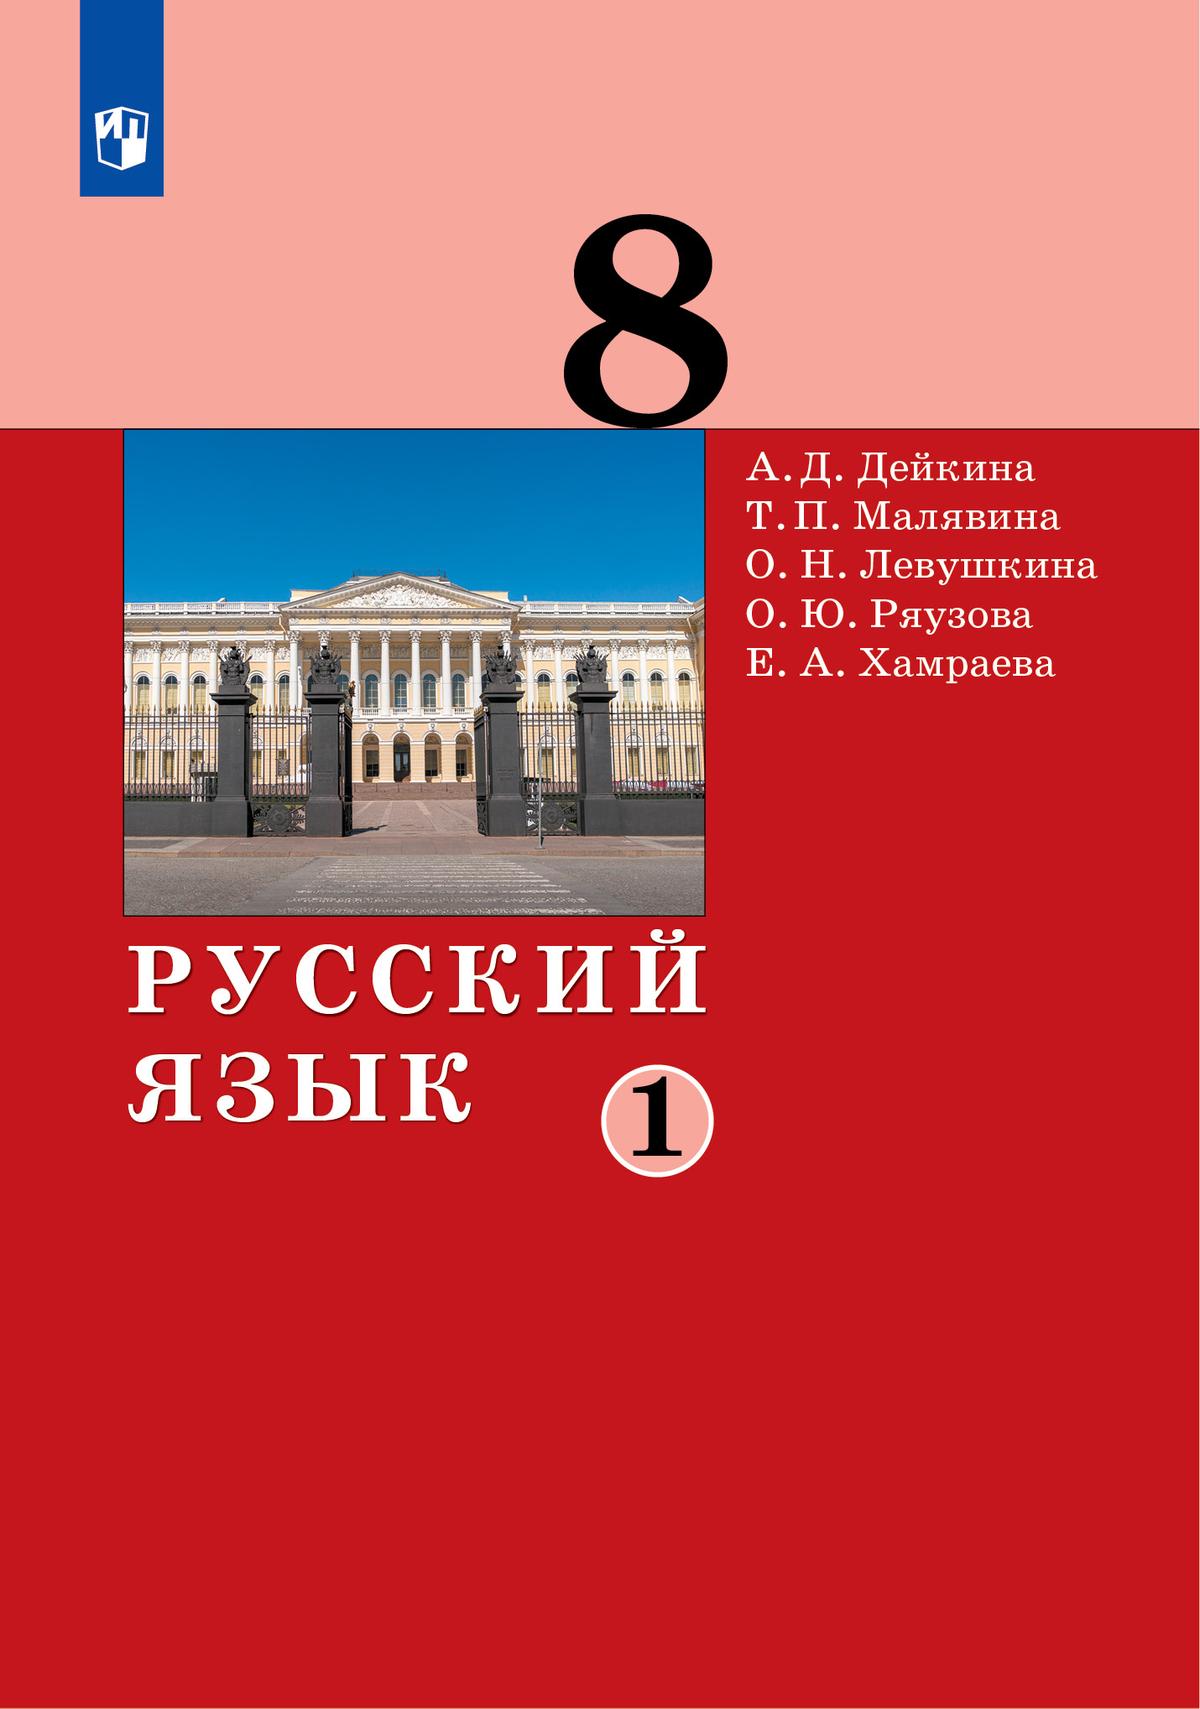 Русский язык. 8 класс. Электронная форма учебника. 2 ч. Часть 1 1